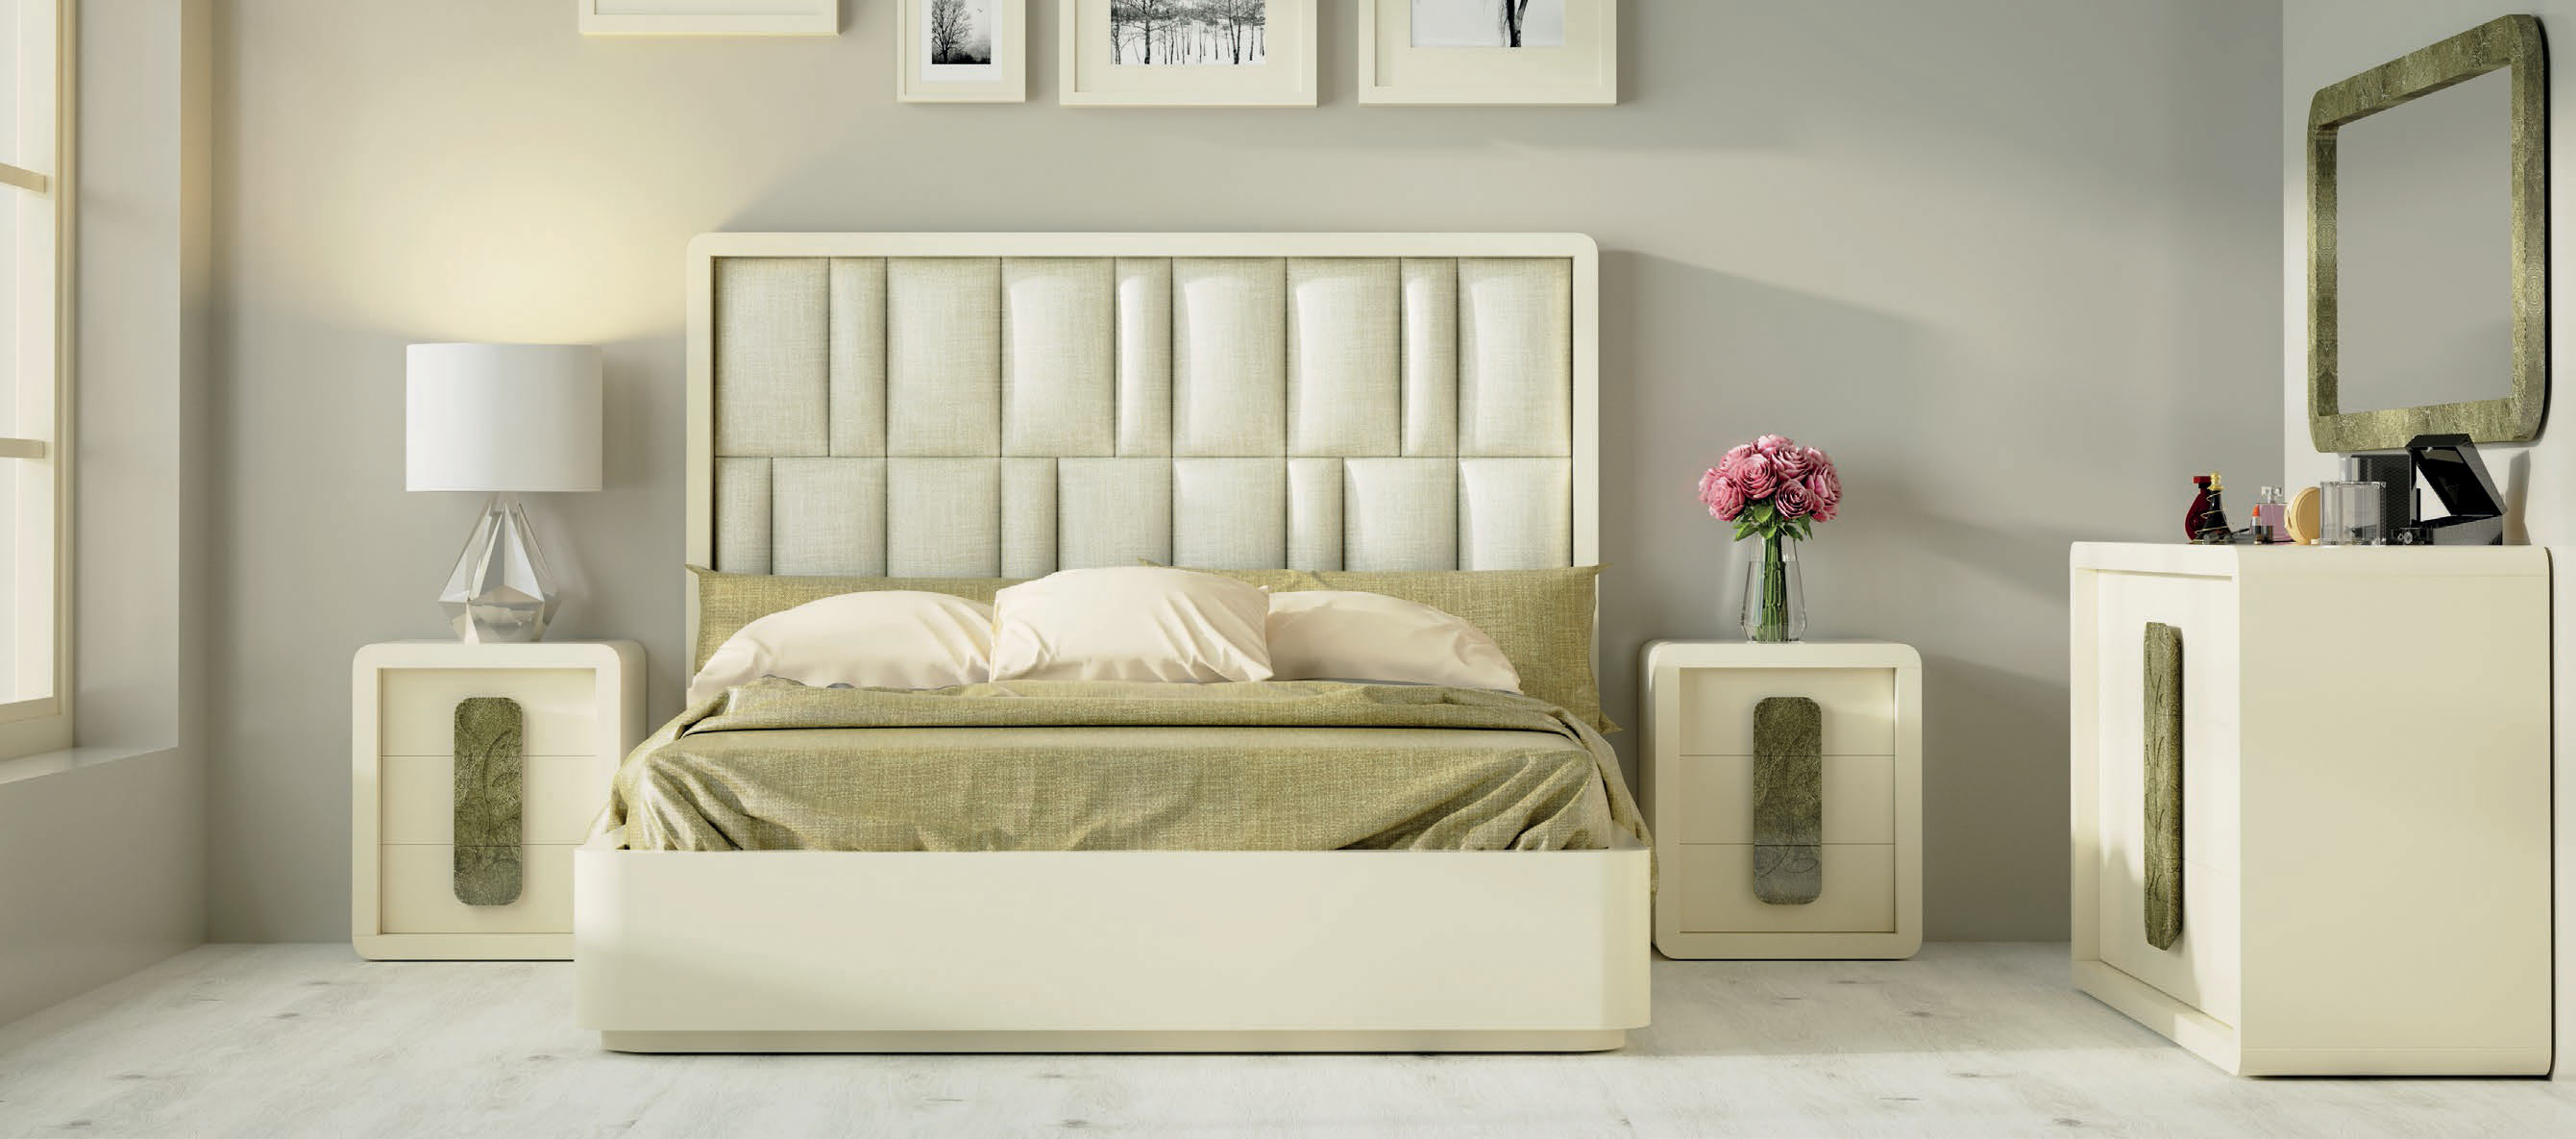 Bedroom Furniture Beds DOR 169